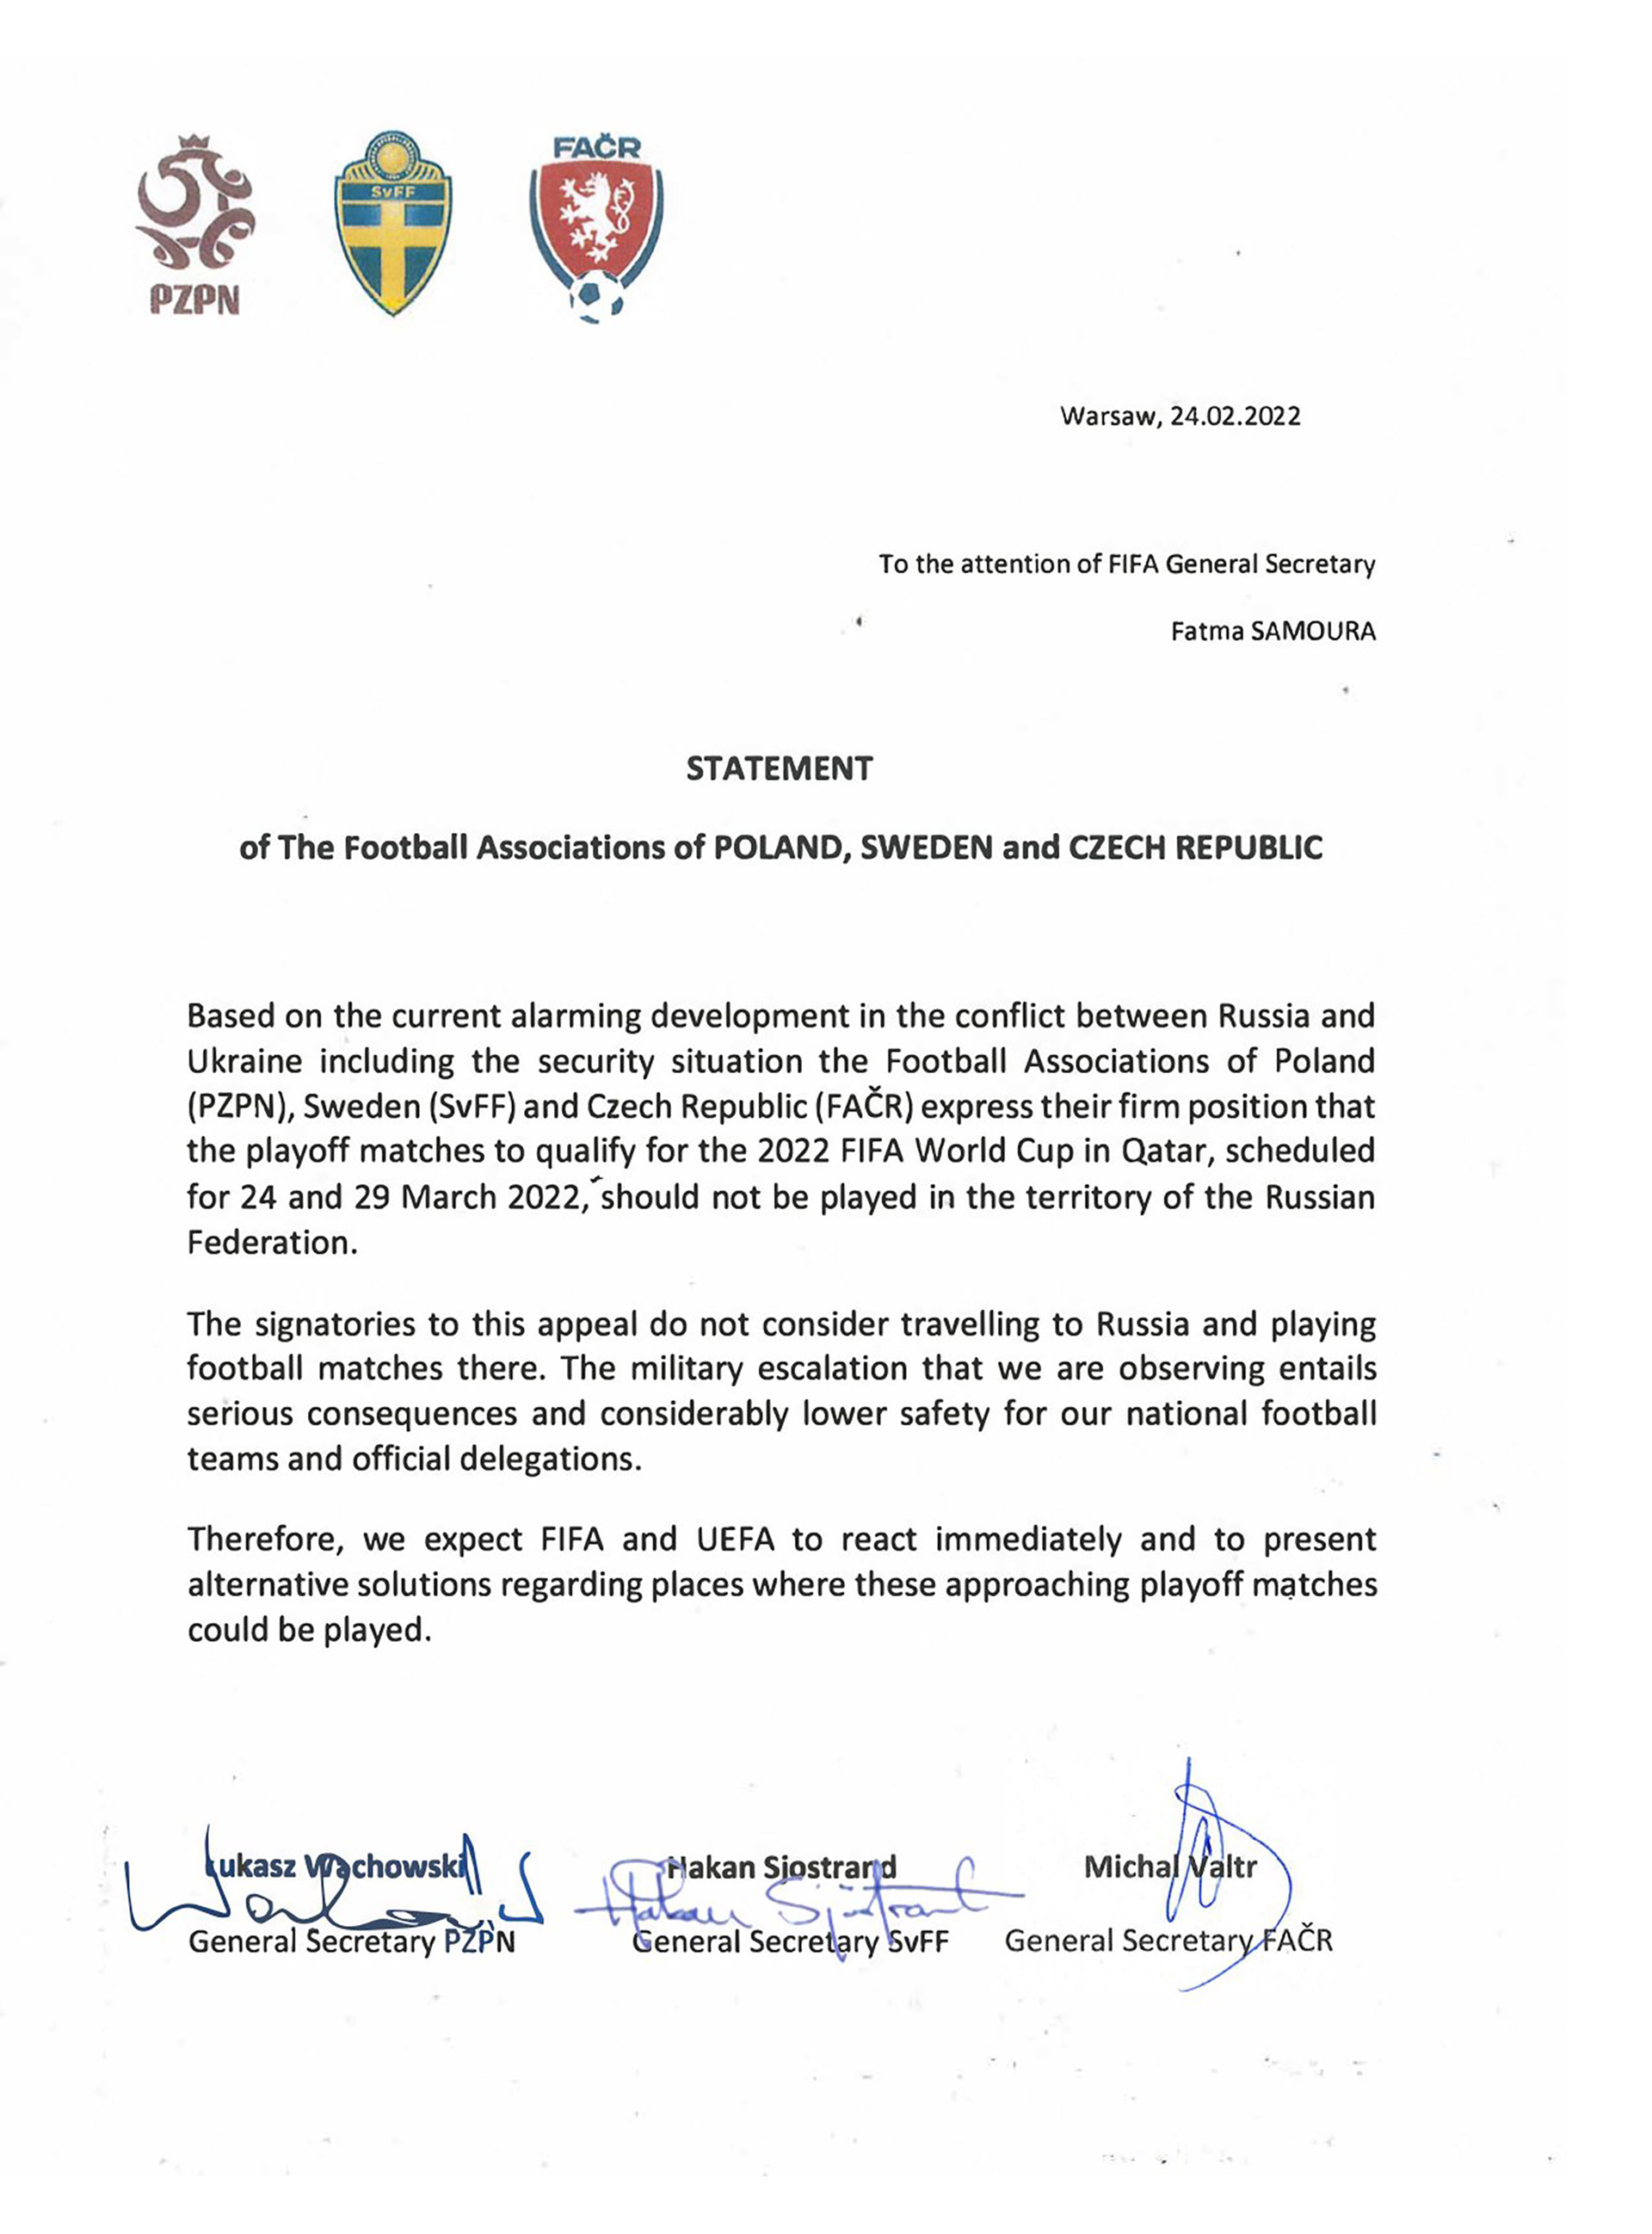 El comunicado de las federaciones de fútbol de Polonia, Suecia y República Checa por el avance de las tropas rusas